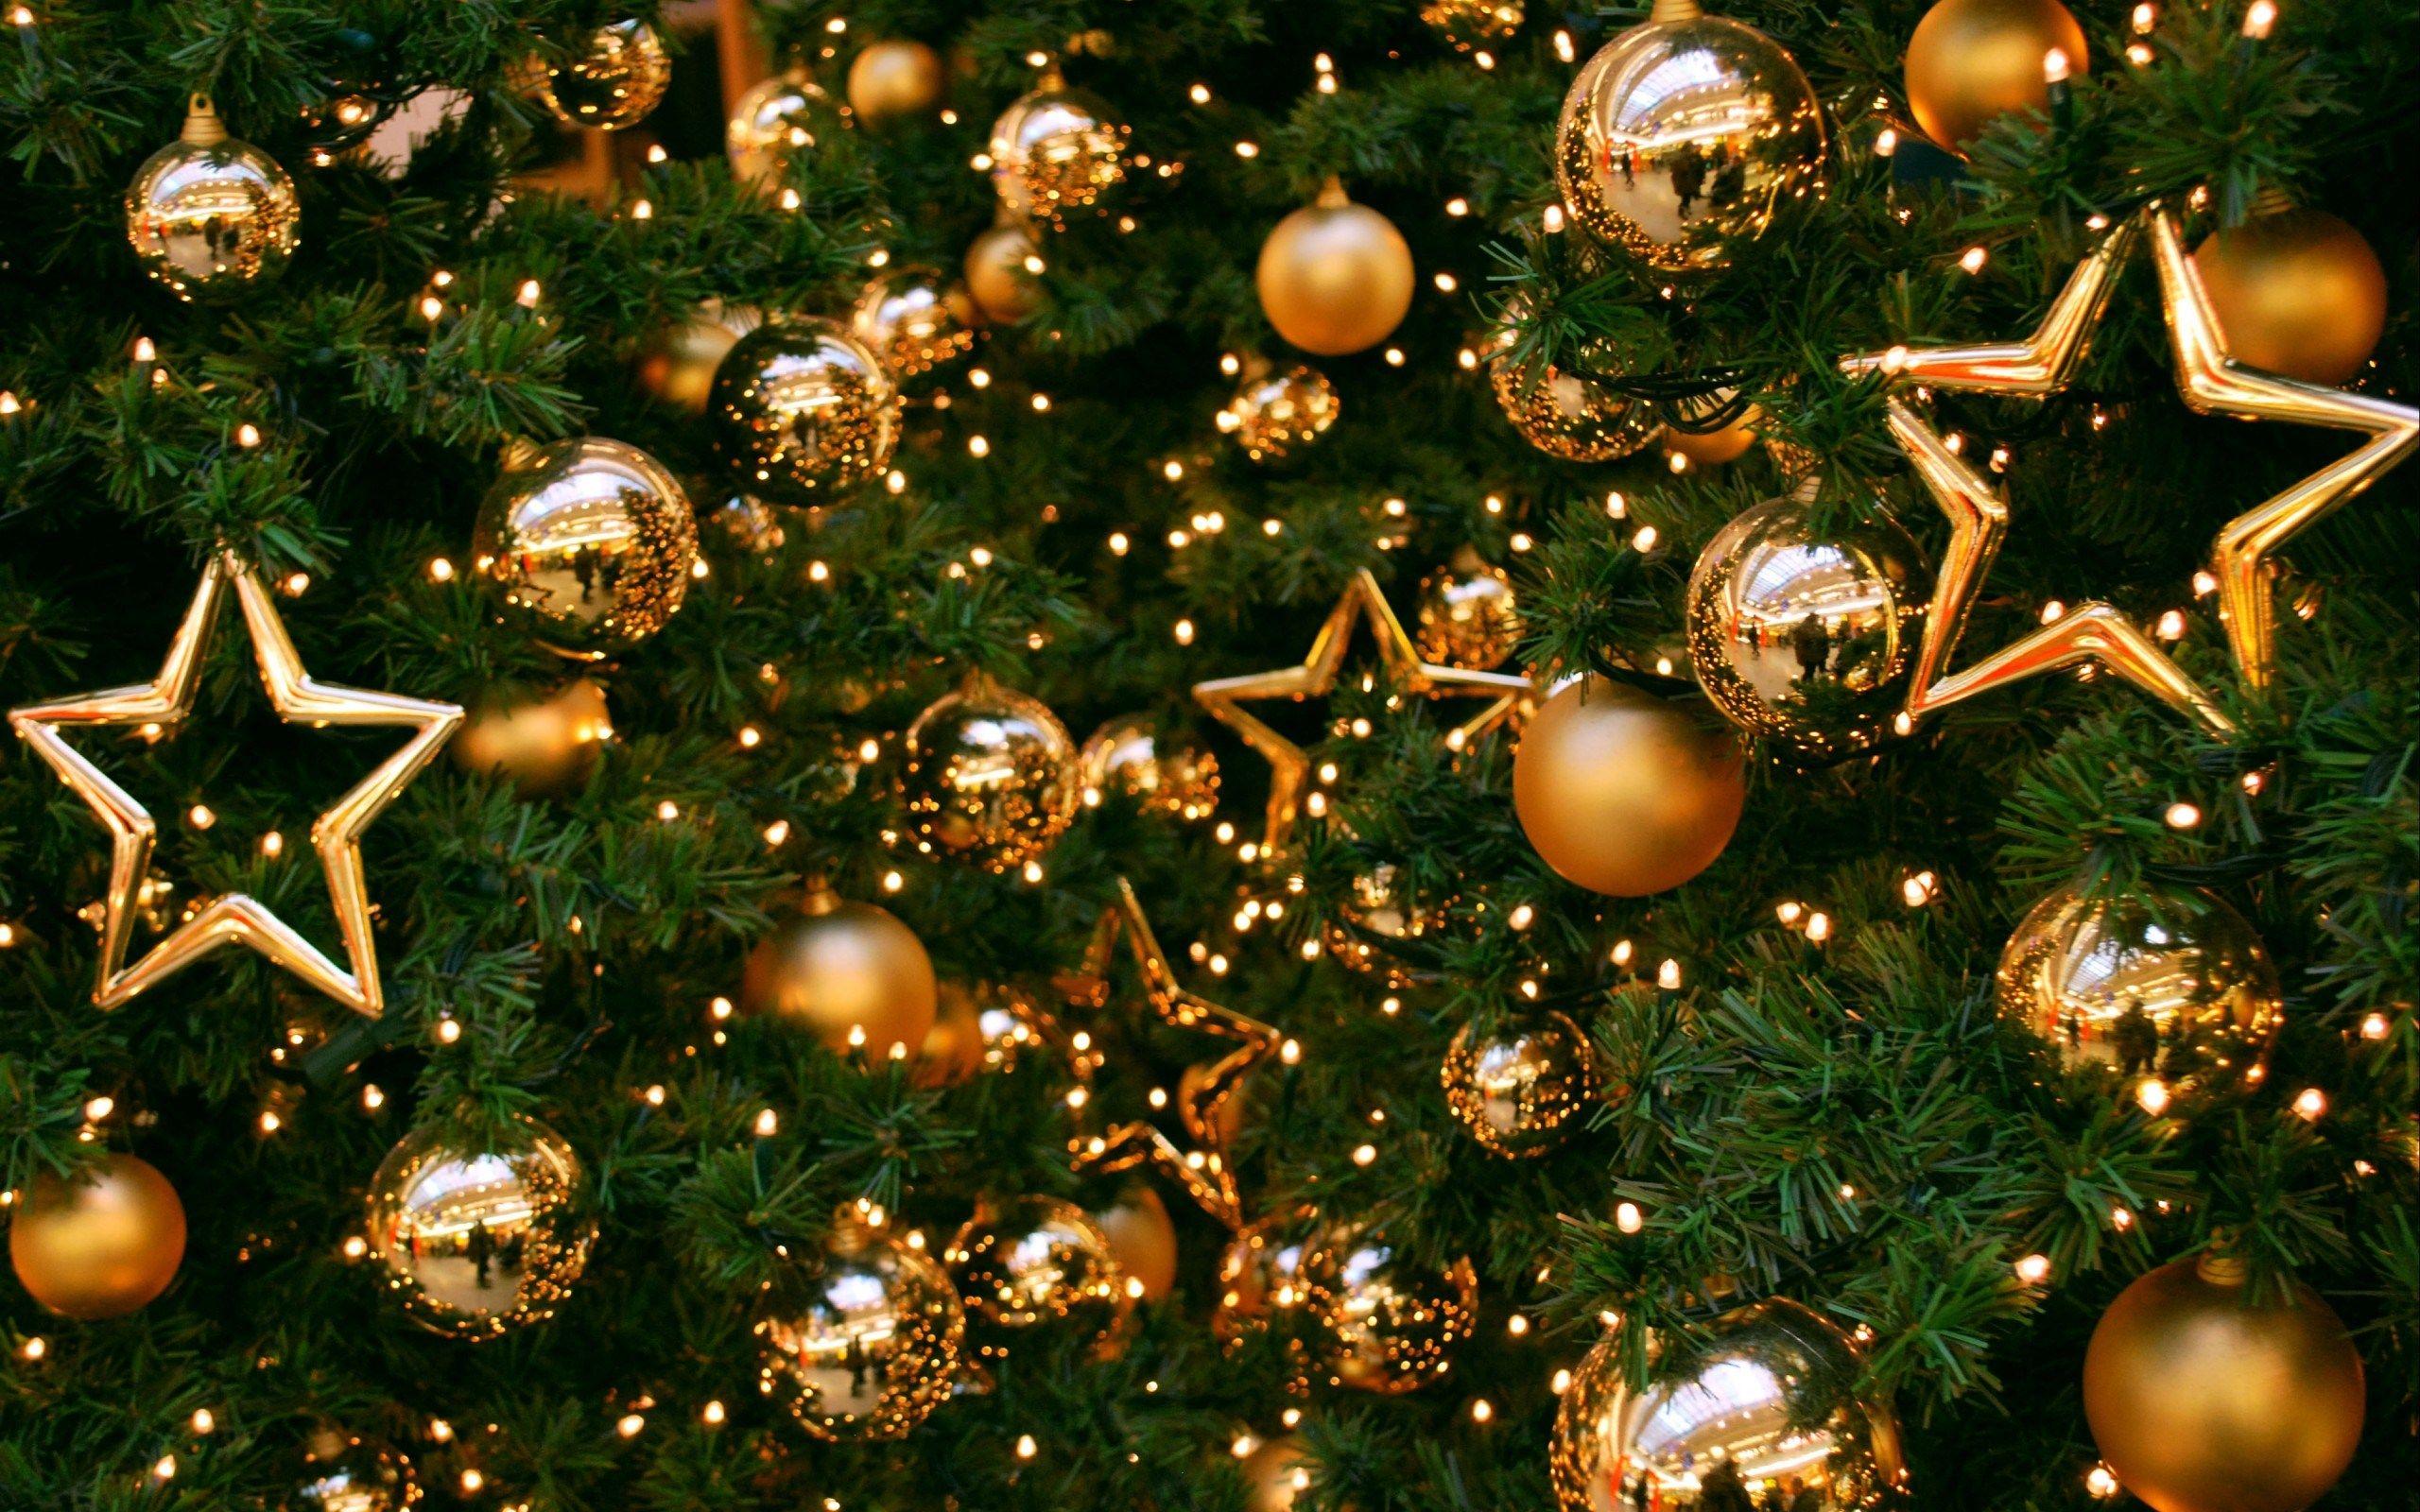 Christmas Tree On Balls And Stars wallpaper